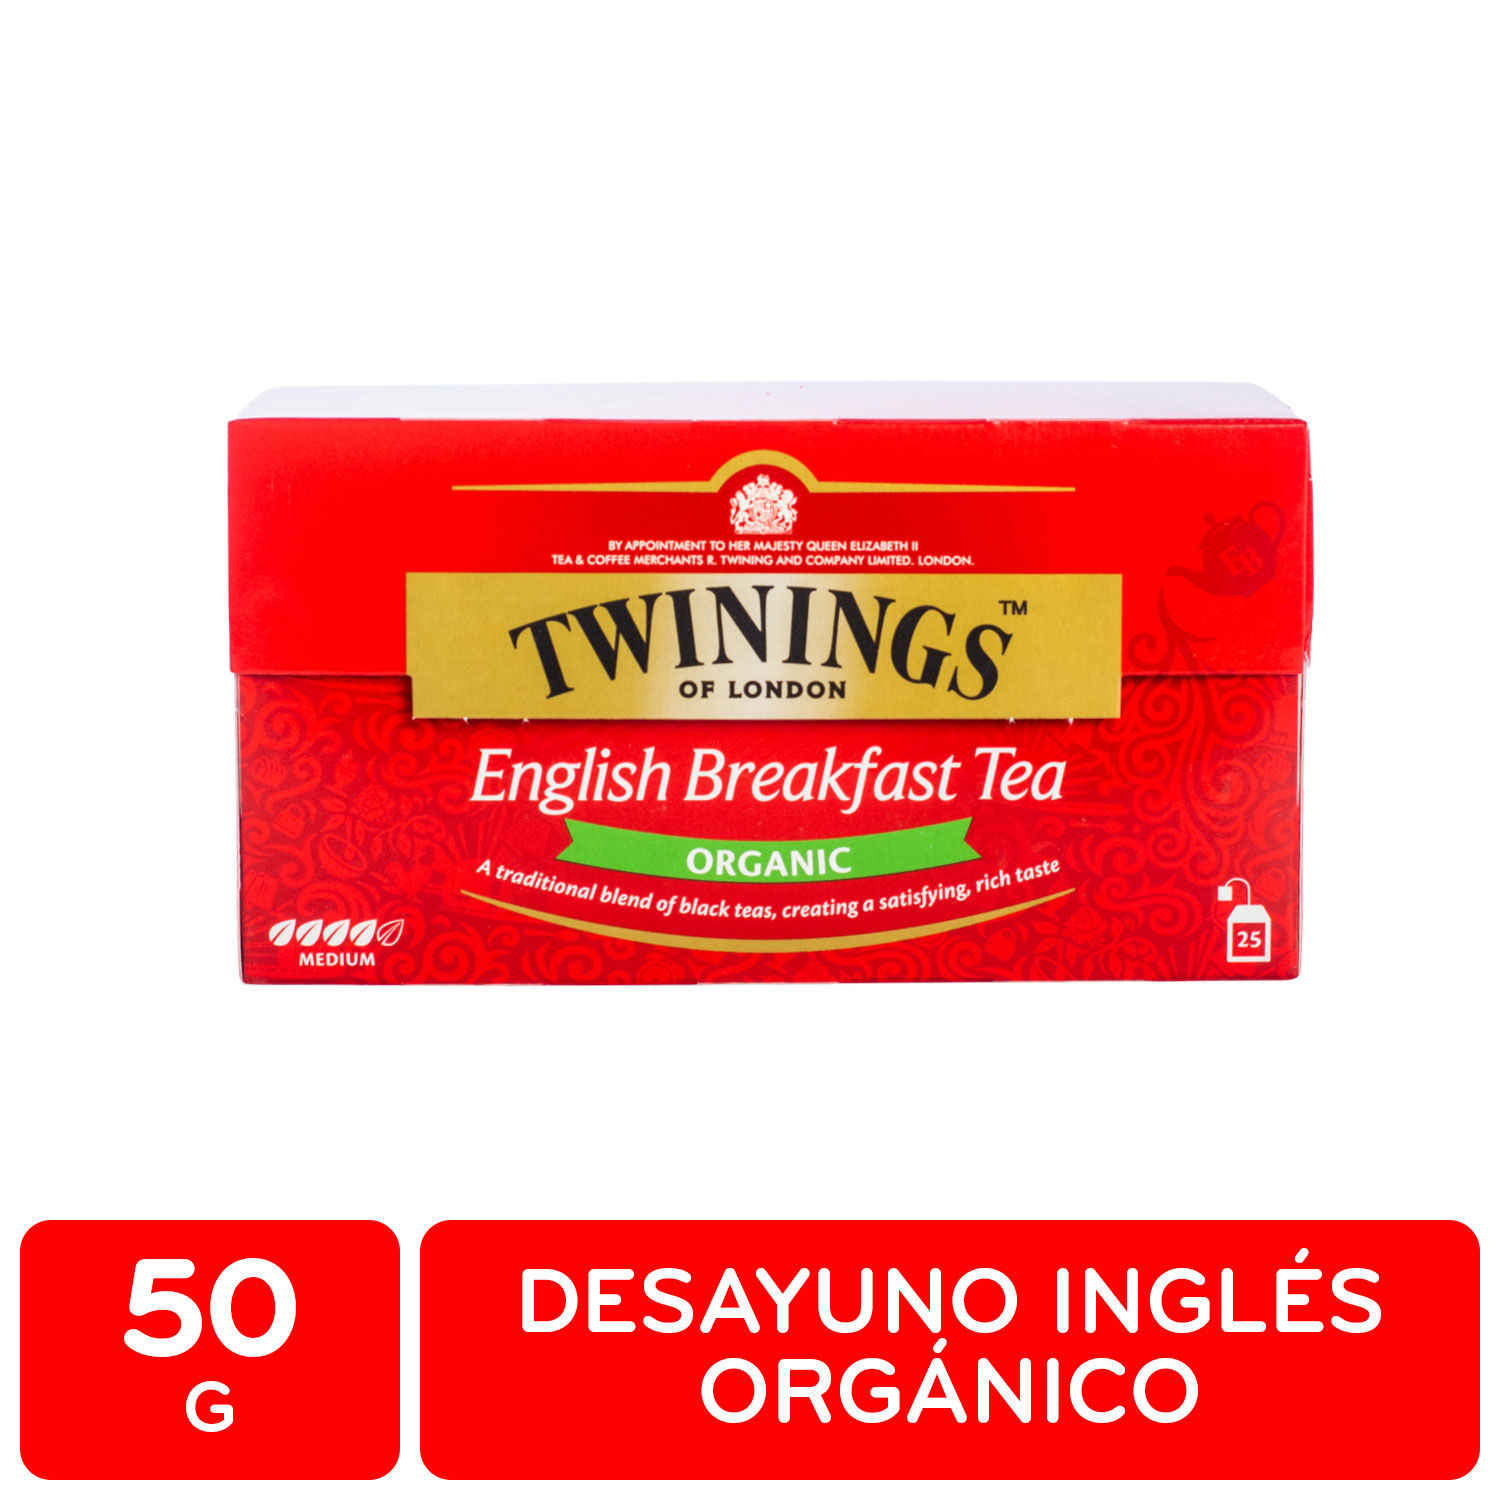 Te Negro Organico Desayuno Ingles Twining Caja 50 G